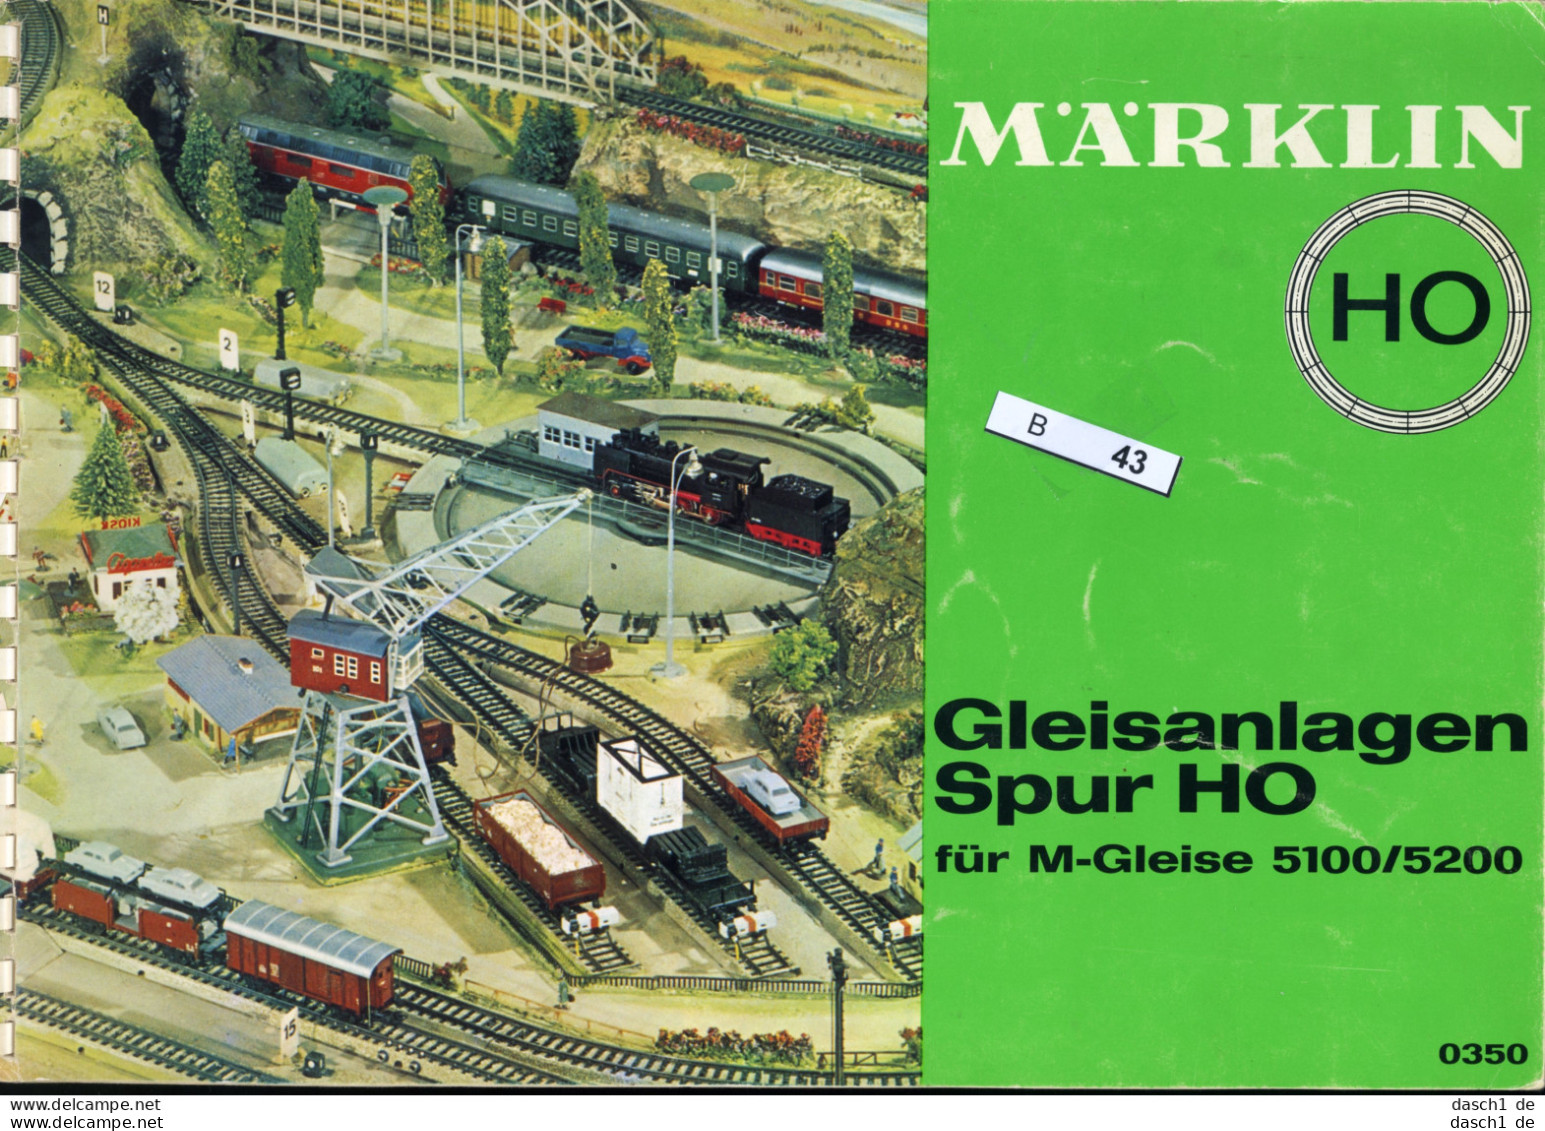 Märklin Gleisanlagen Spur H0, B-043 - Spielzeug & Modellbau